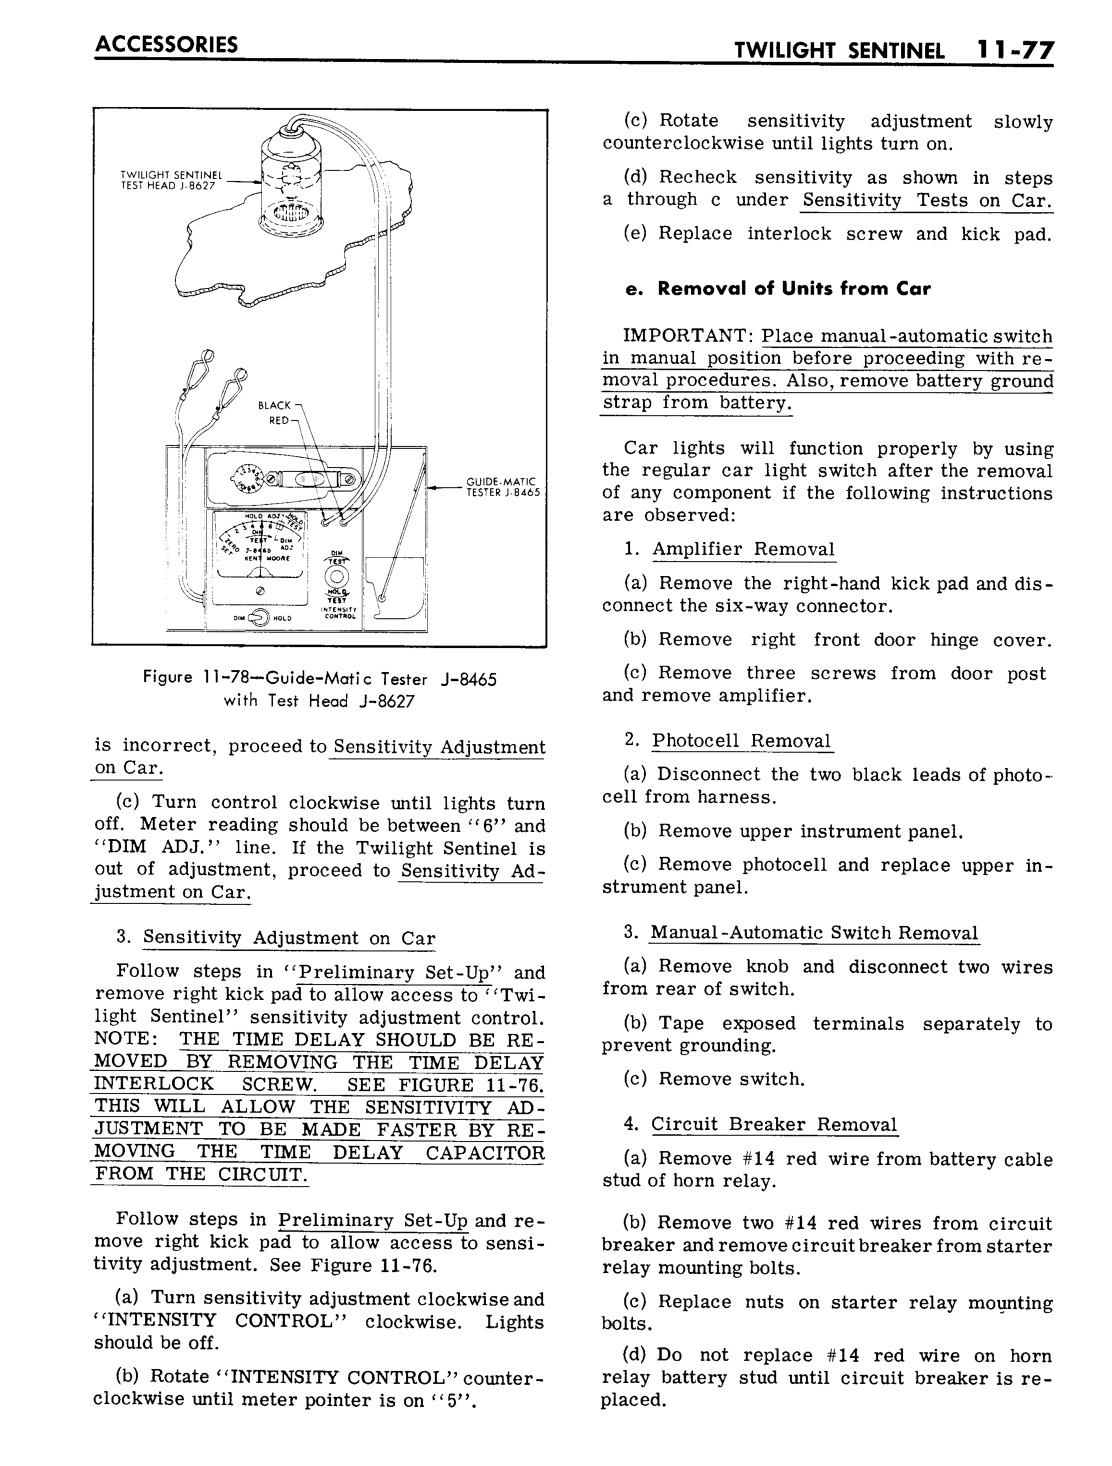 n_11 1961 Buick Shop Manual - Accessories-077-077.jpg